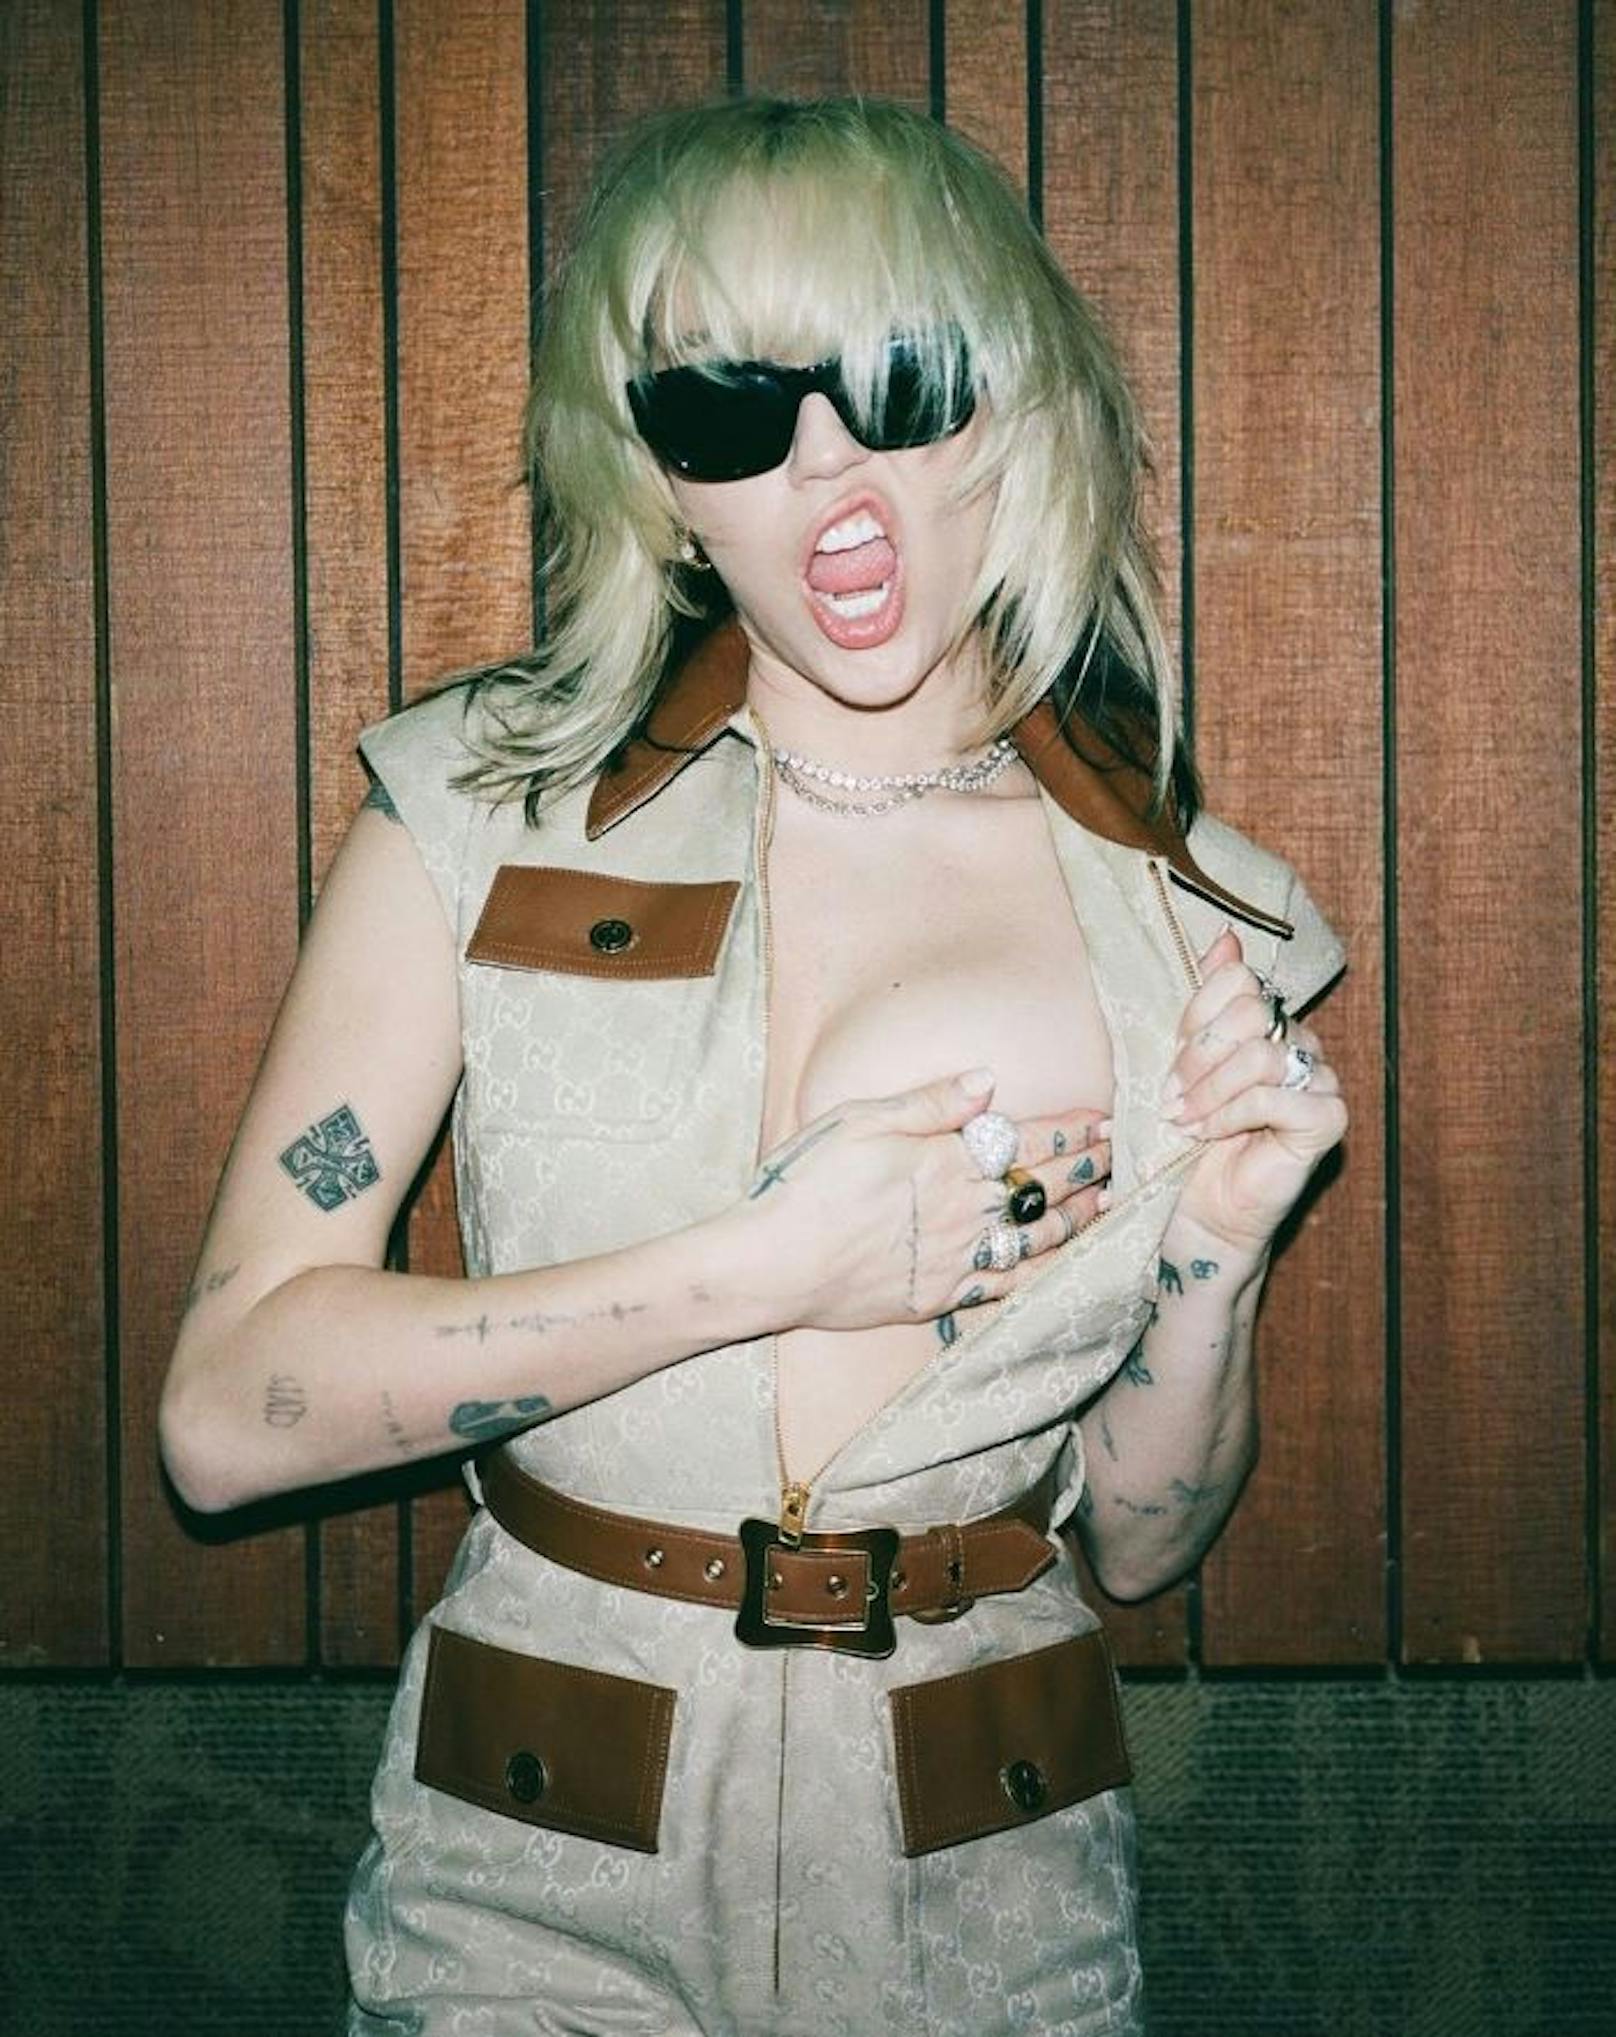 Gucci steckte Miley Cyrus für die neue Werbekampagne in eine "brave Bluse". Sie machte daraus ihren eigenen Look.